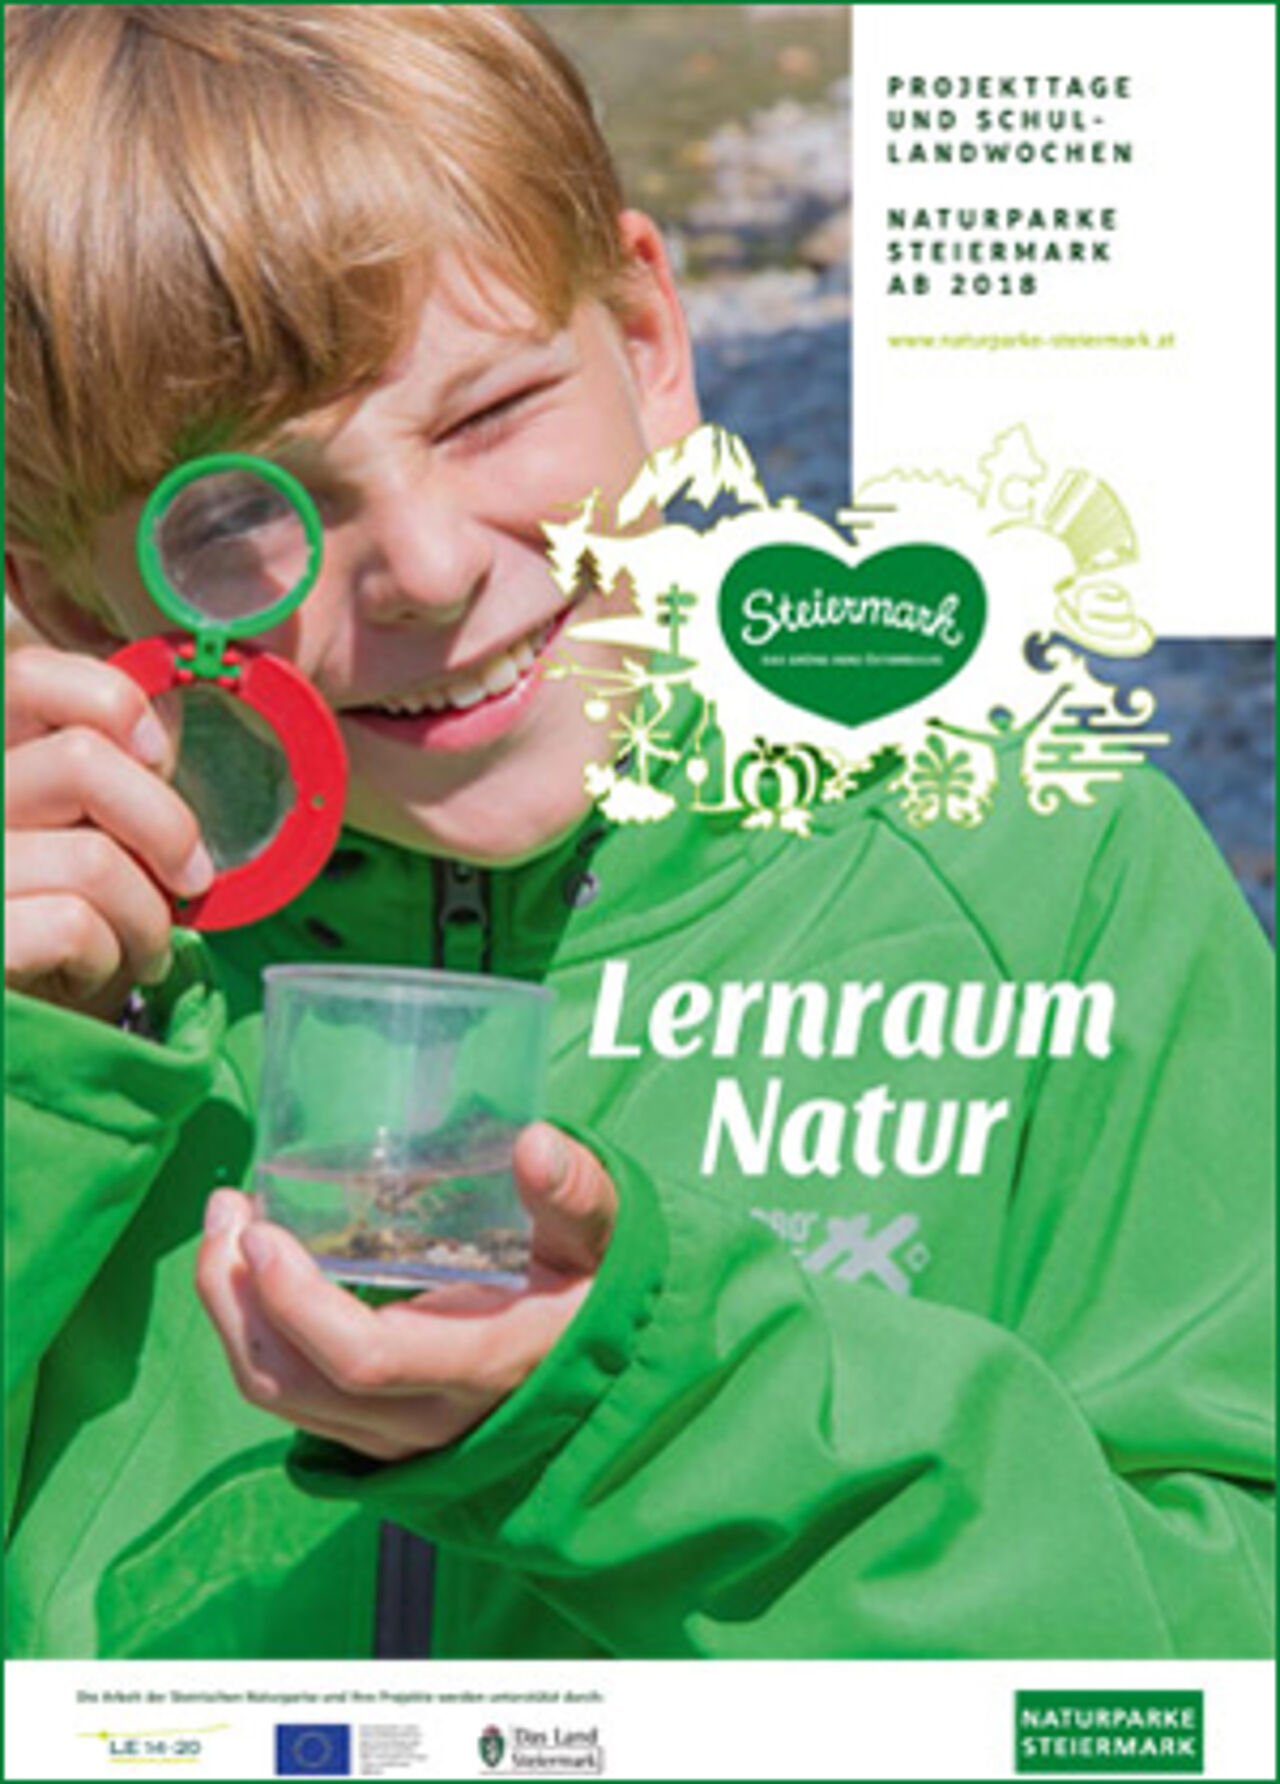 Schulprogramm der Naturparke Steiermark